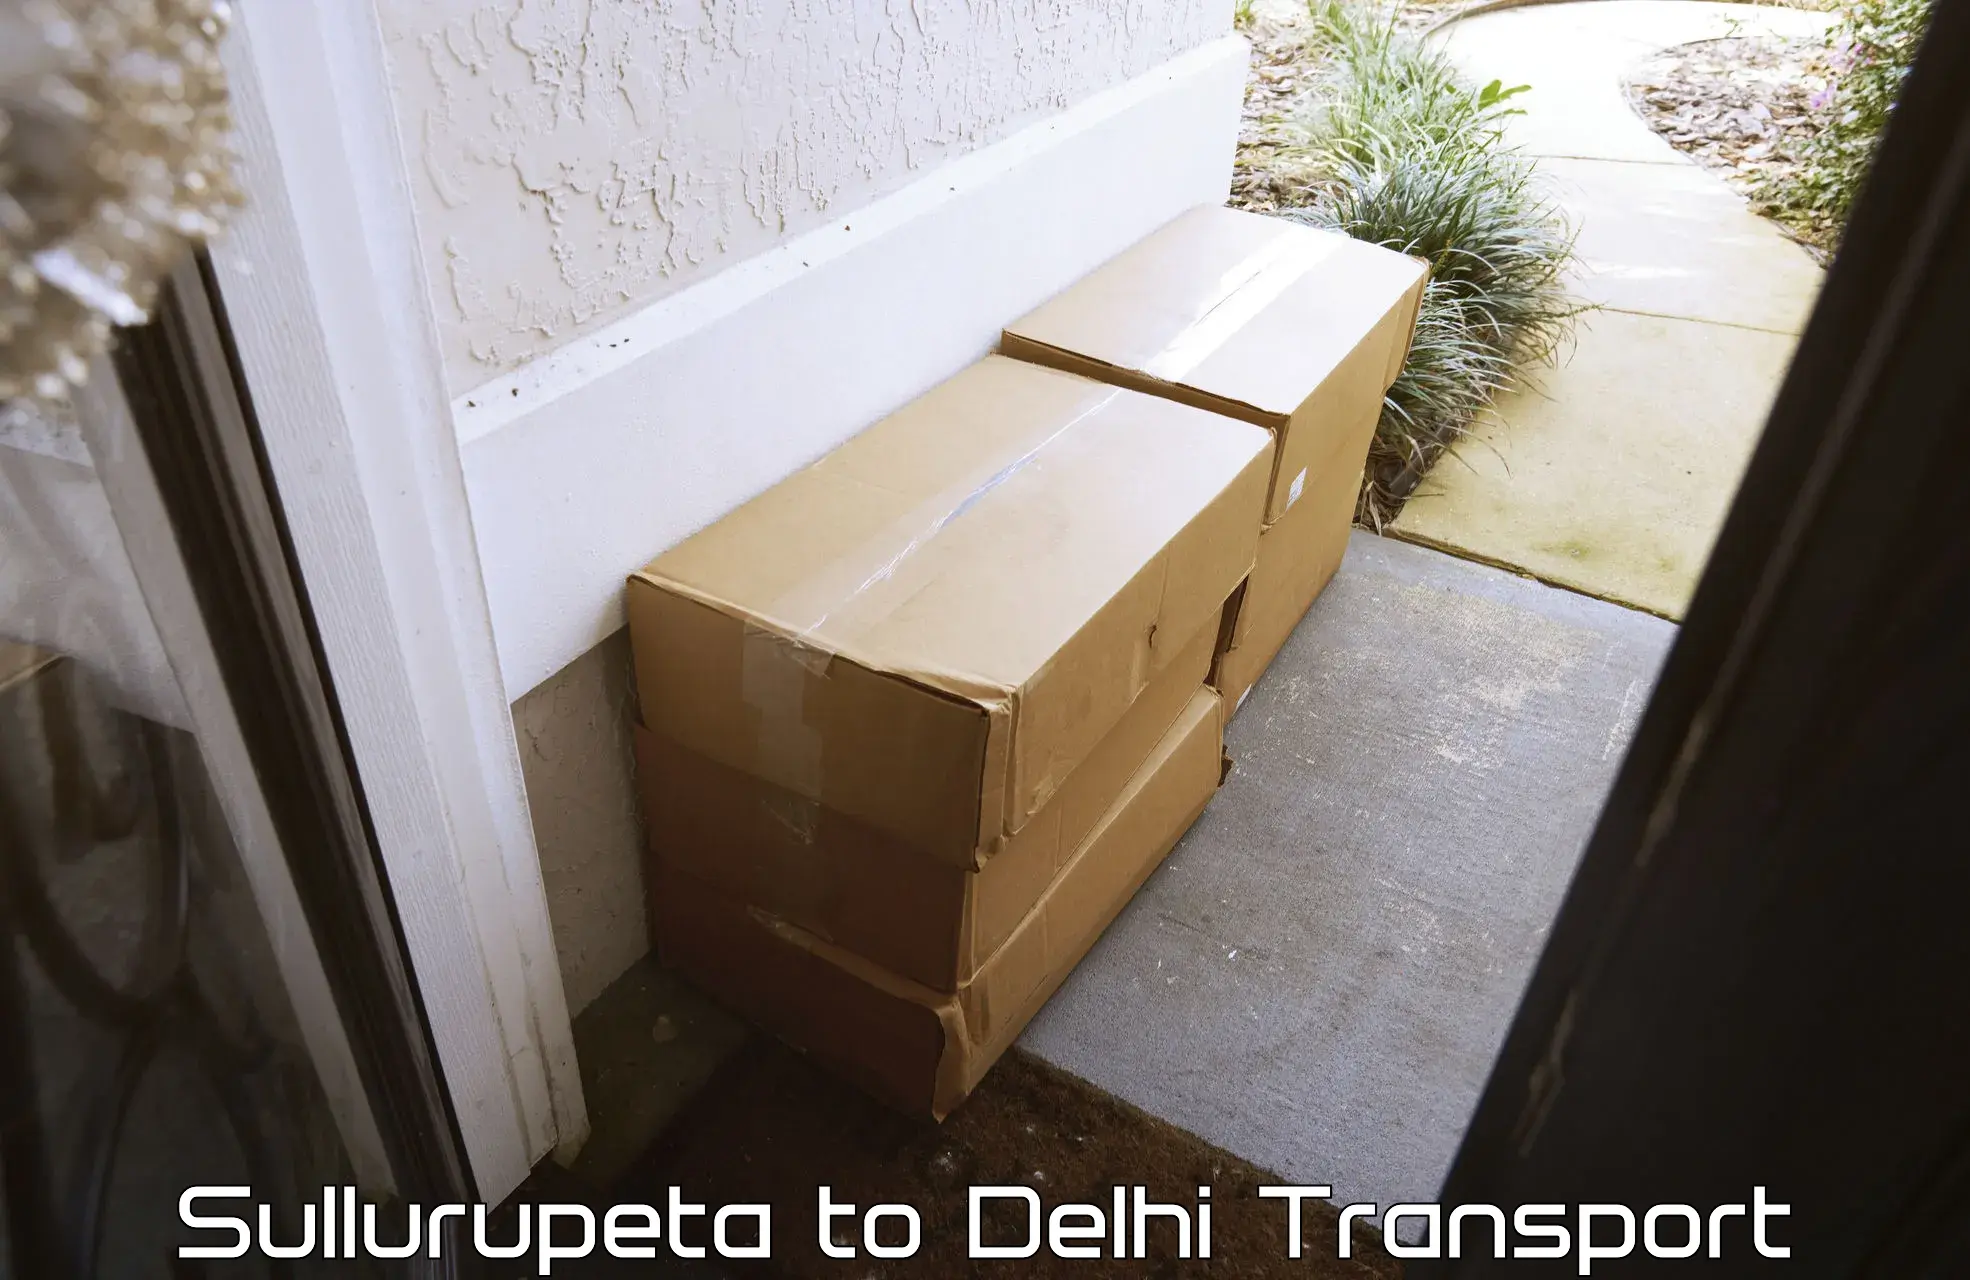 Container transportation services Sullurupeta to Jamia Millia Islamia New Delhi